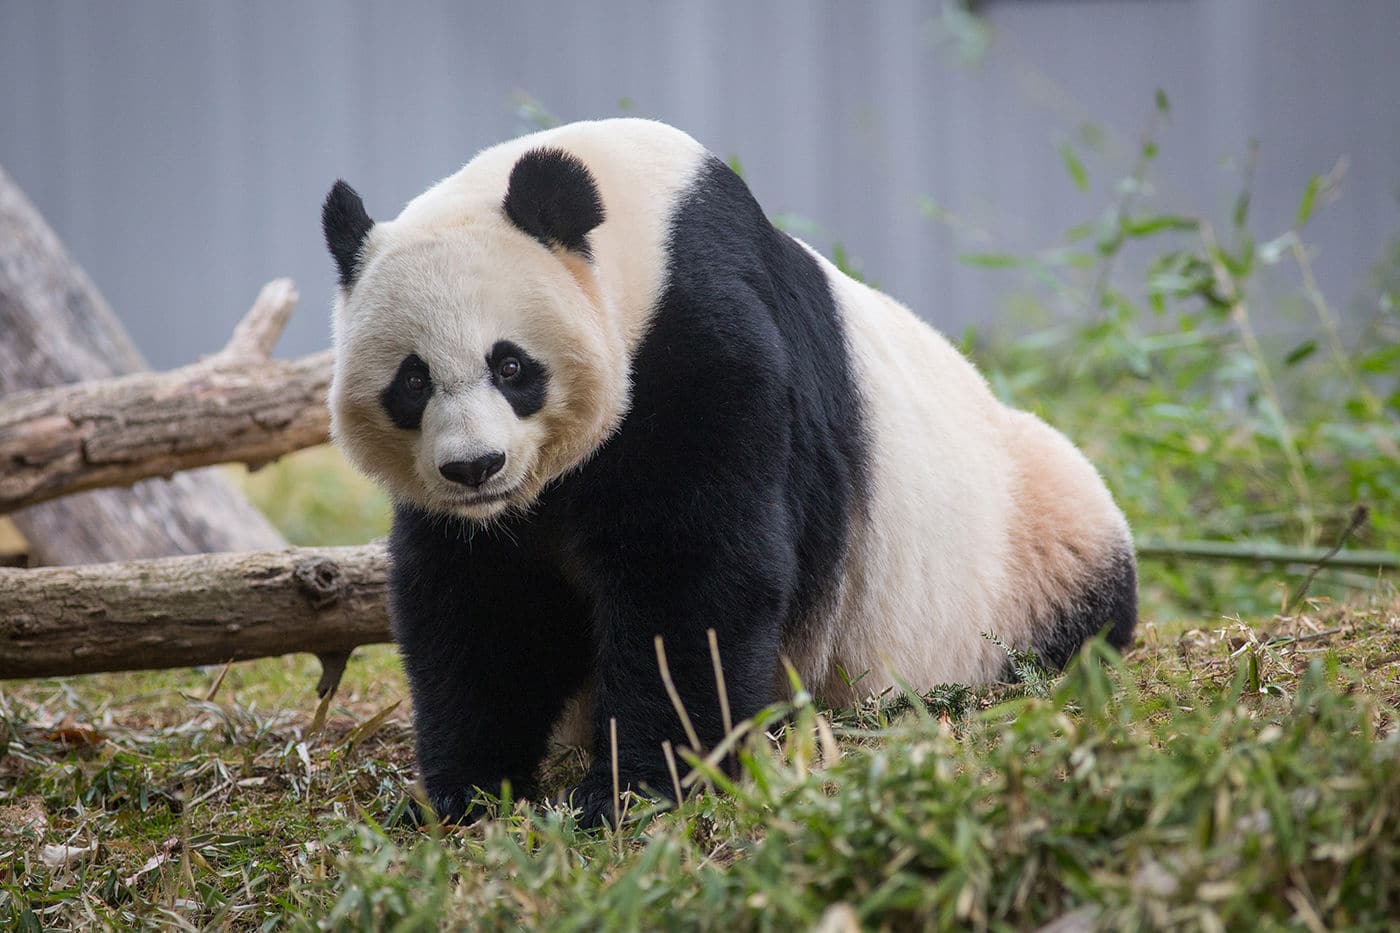 Giant panda at National Zoo.